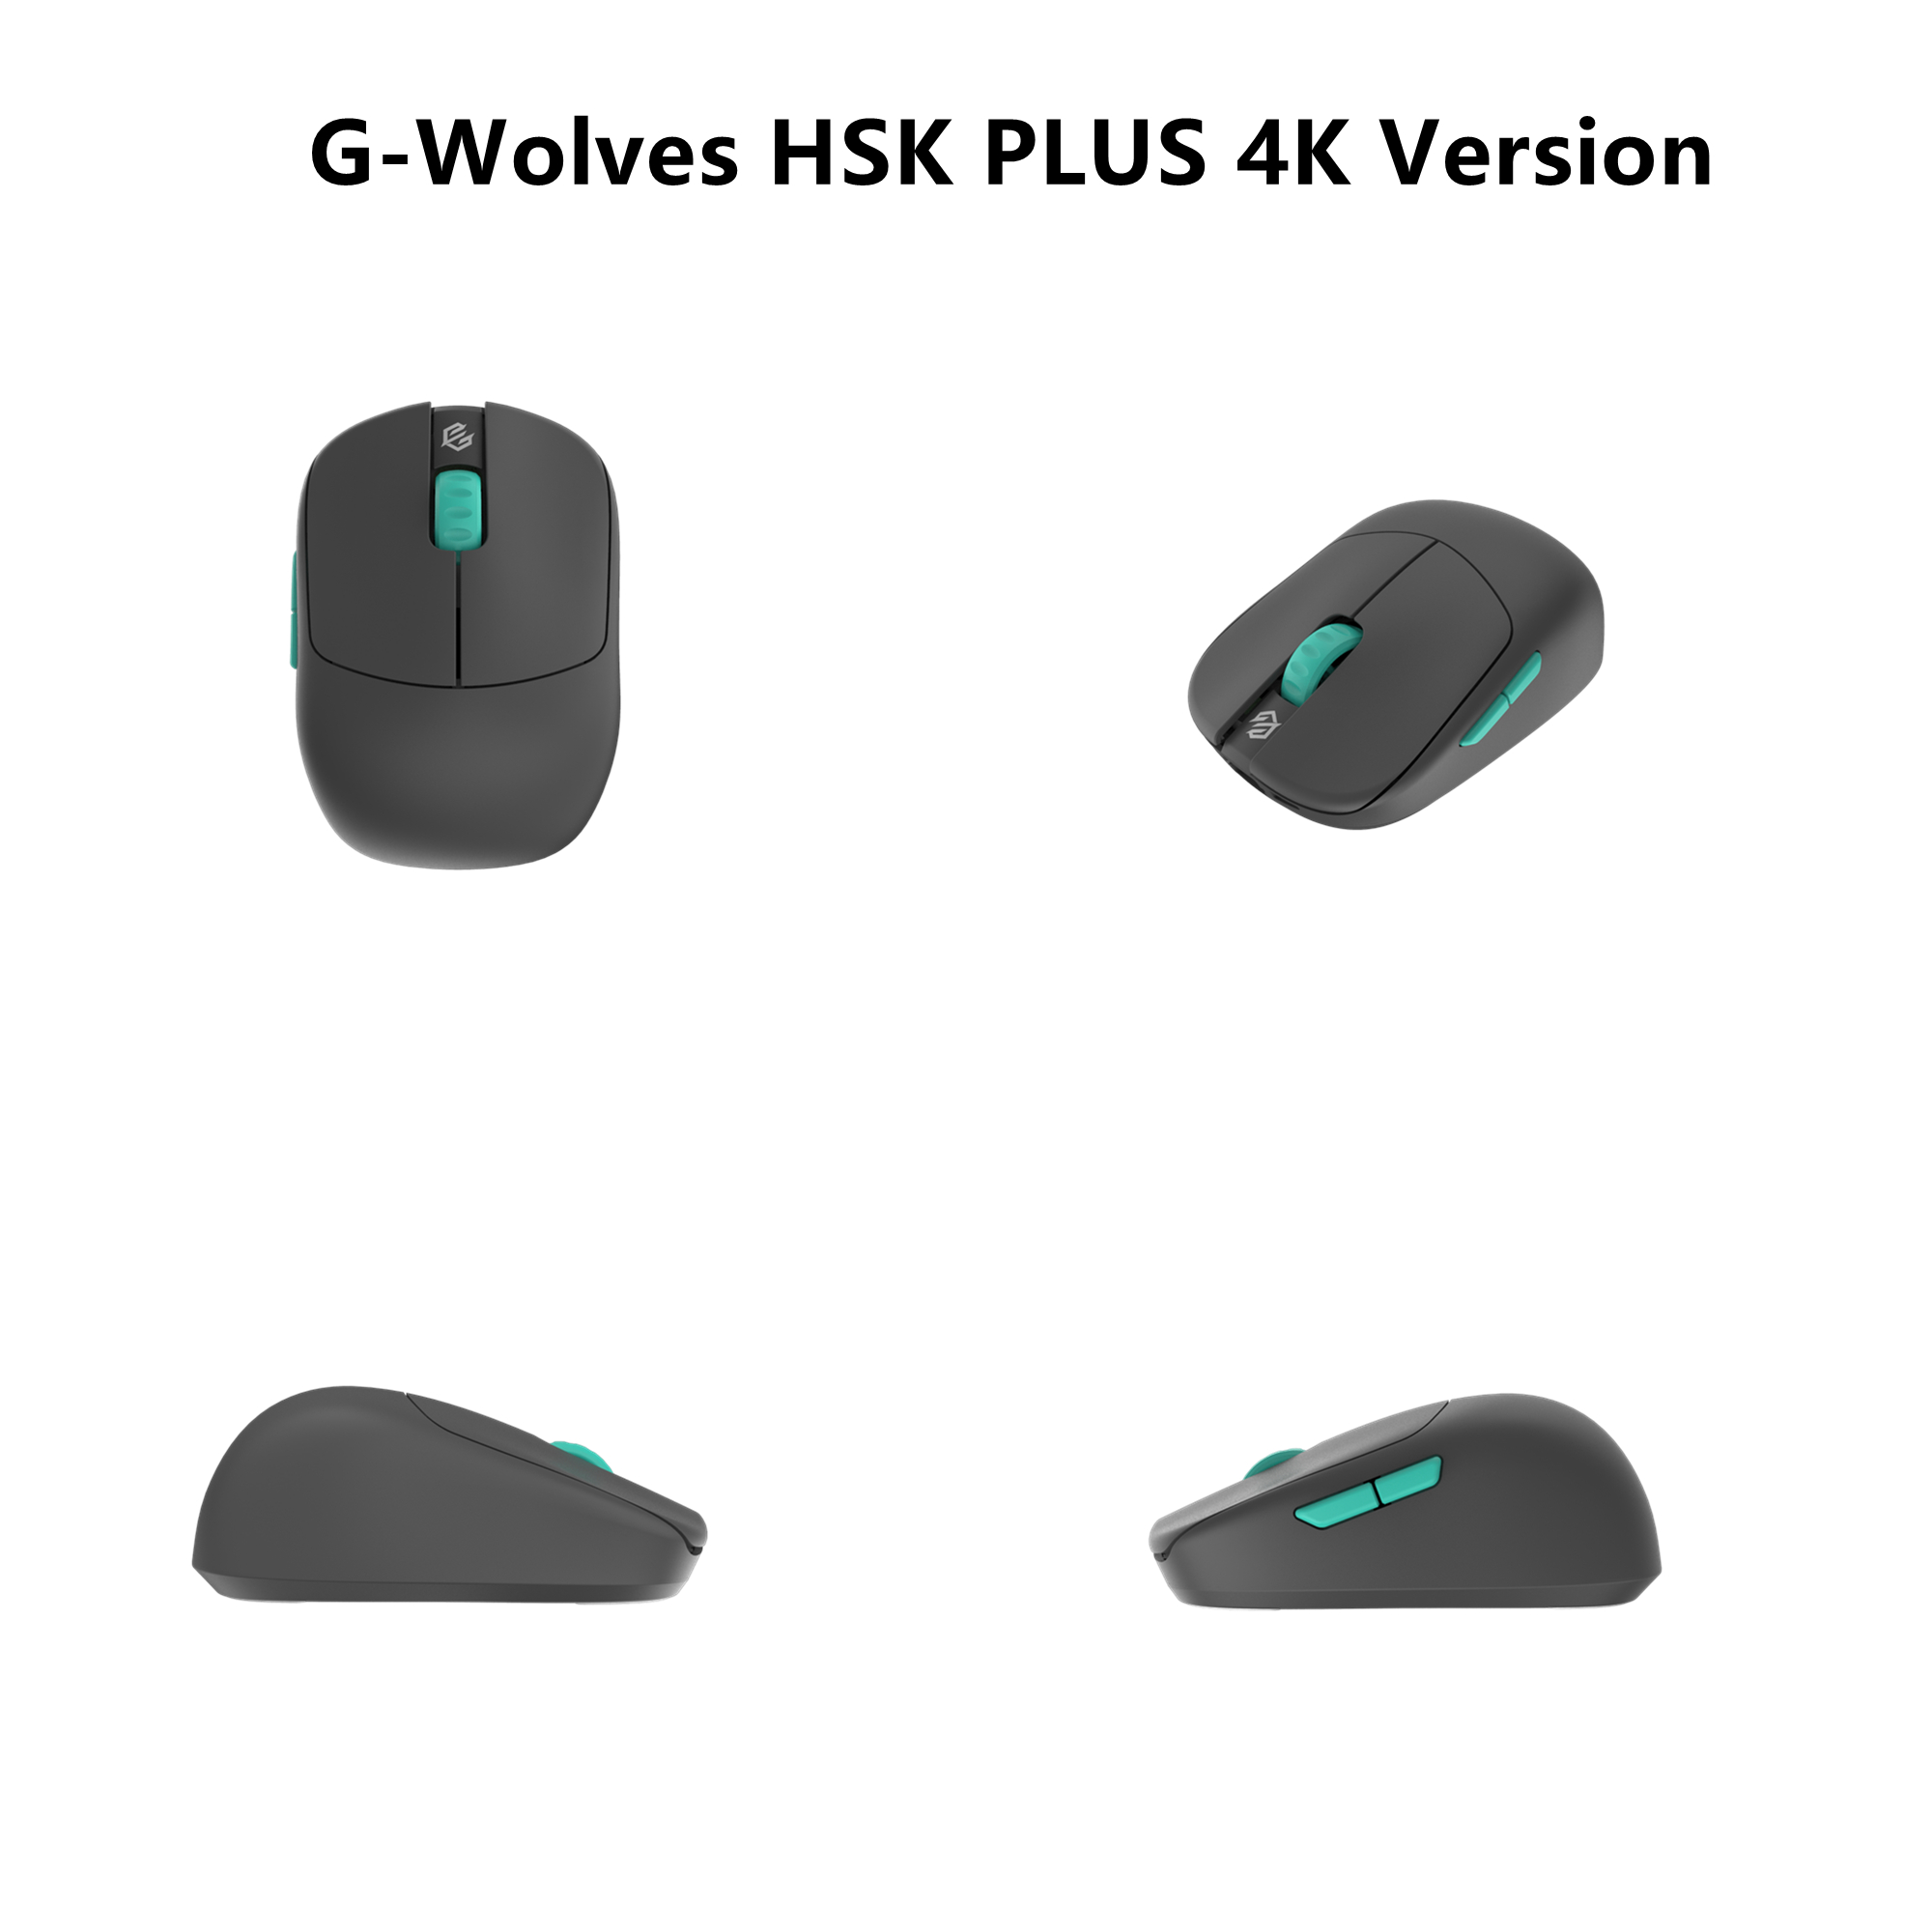 G-wolves on X: "G-Wolves HSK PLUS 4K Version， love?♥️🙏  https://t.co/E5VhmYAzgX" / X